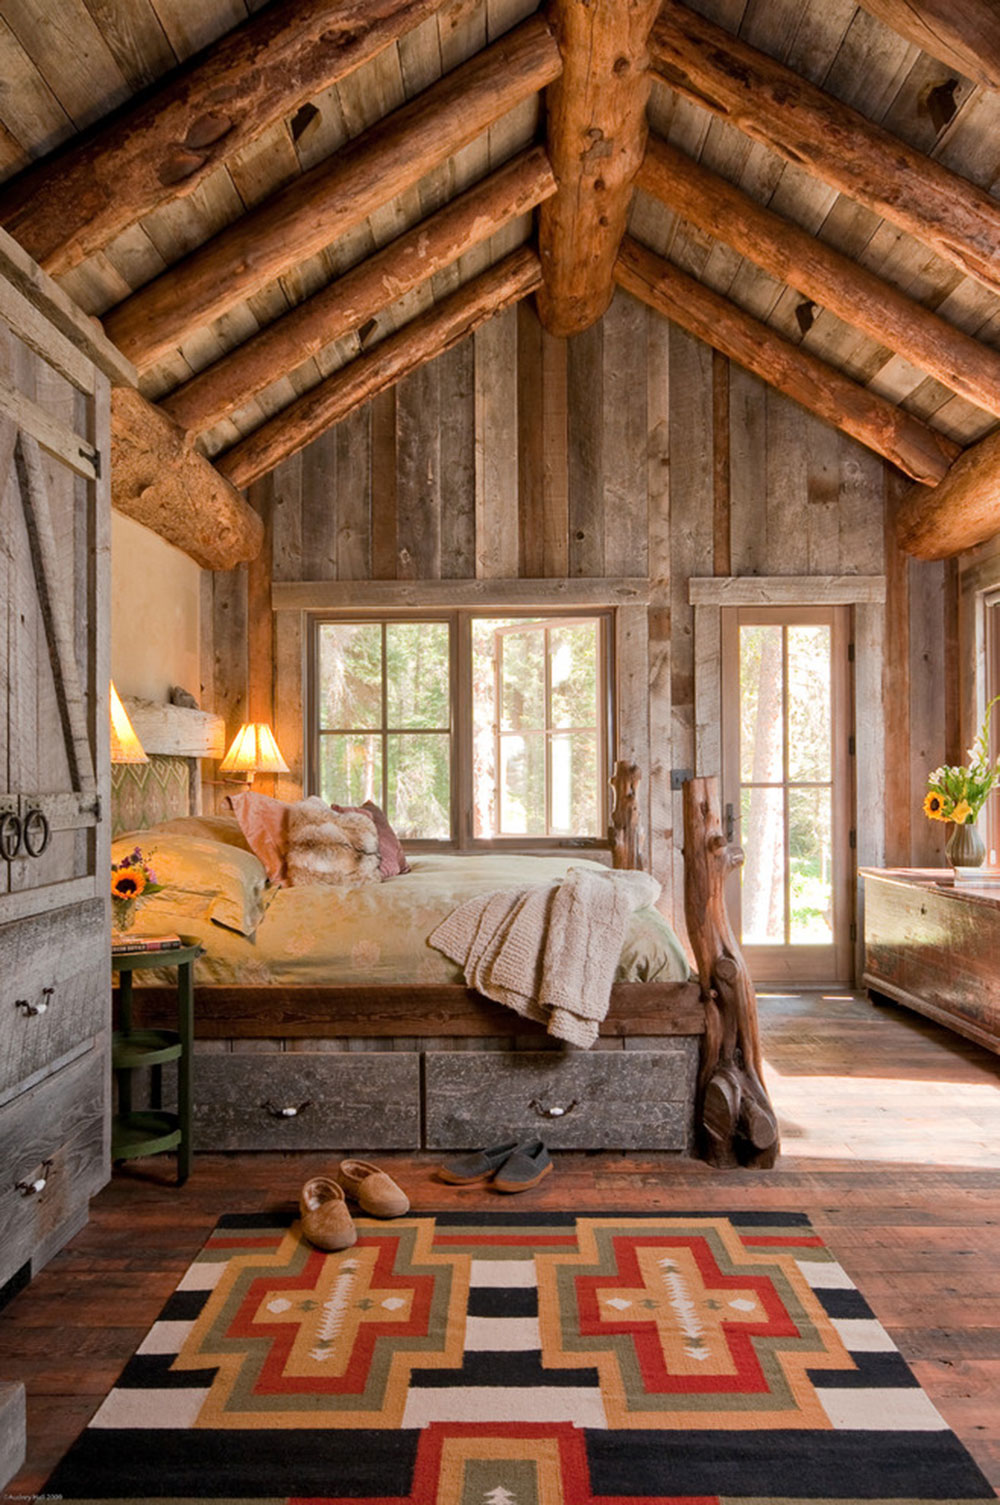 Rustic-Bedroom-Design-Ideas-That-Exude-Comfort-2 Rustic-Bedroom-Design-Ideas-That-Exude Comfort